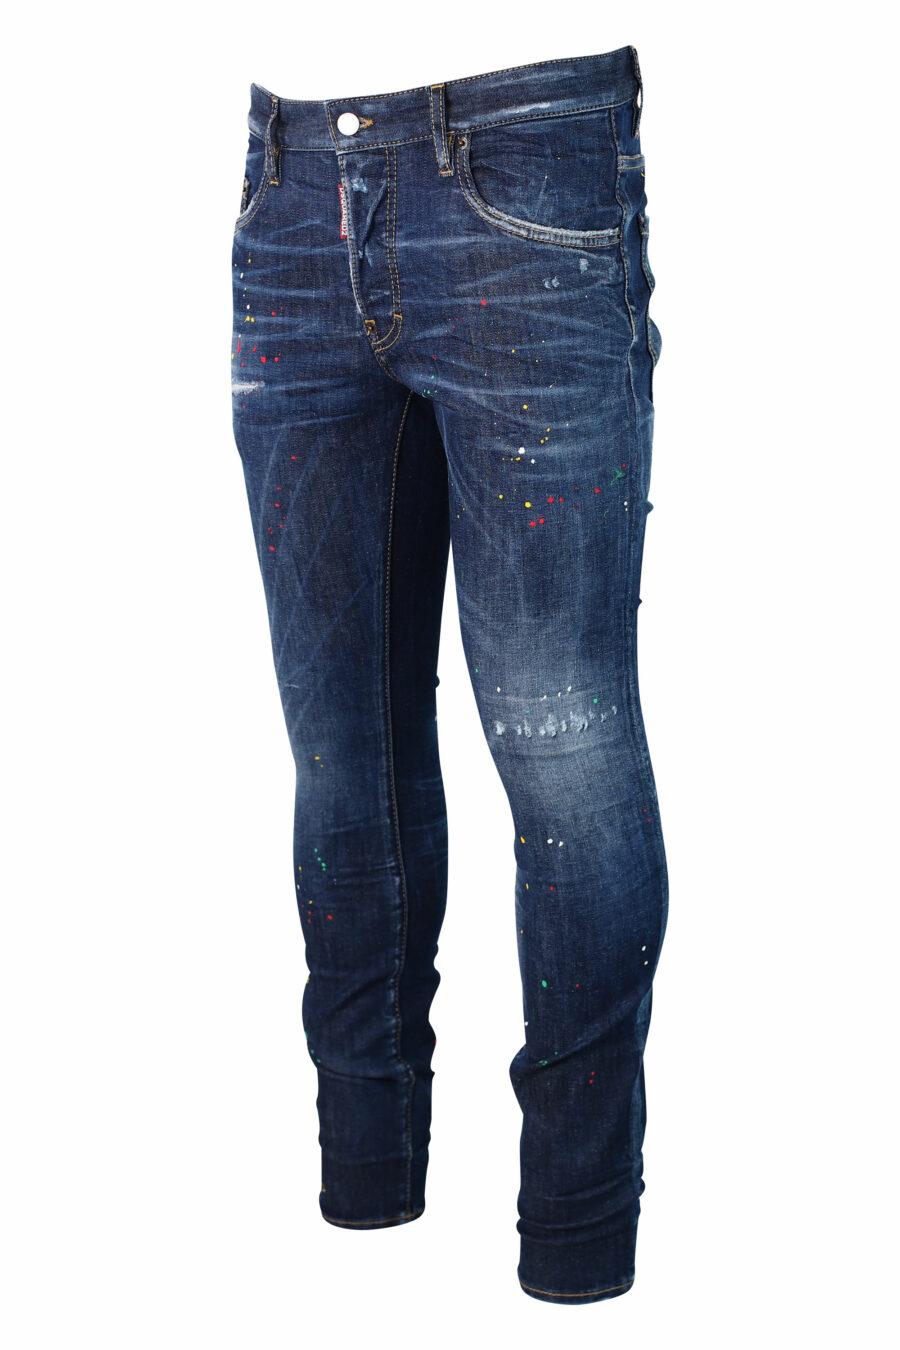 Calças de ganga azuis "super twinky jean" usadas "bob marley" - IMG 9923